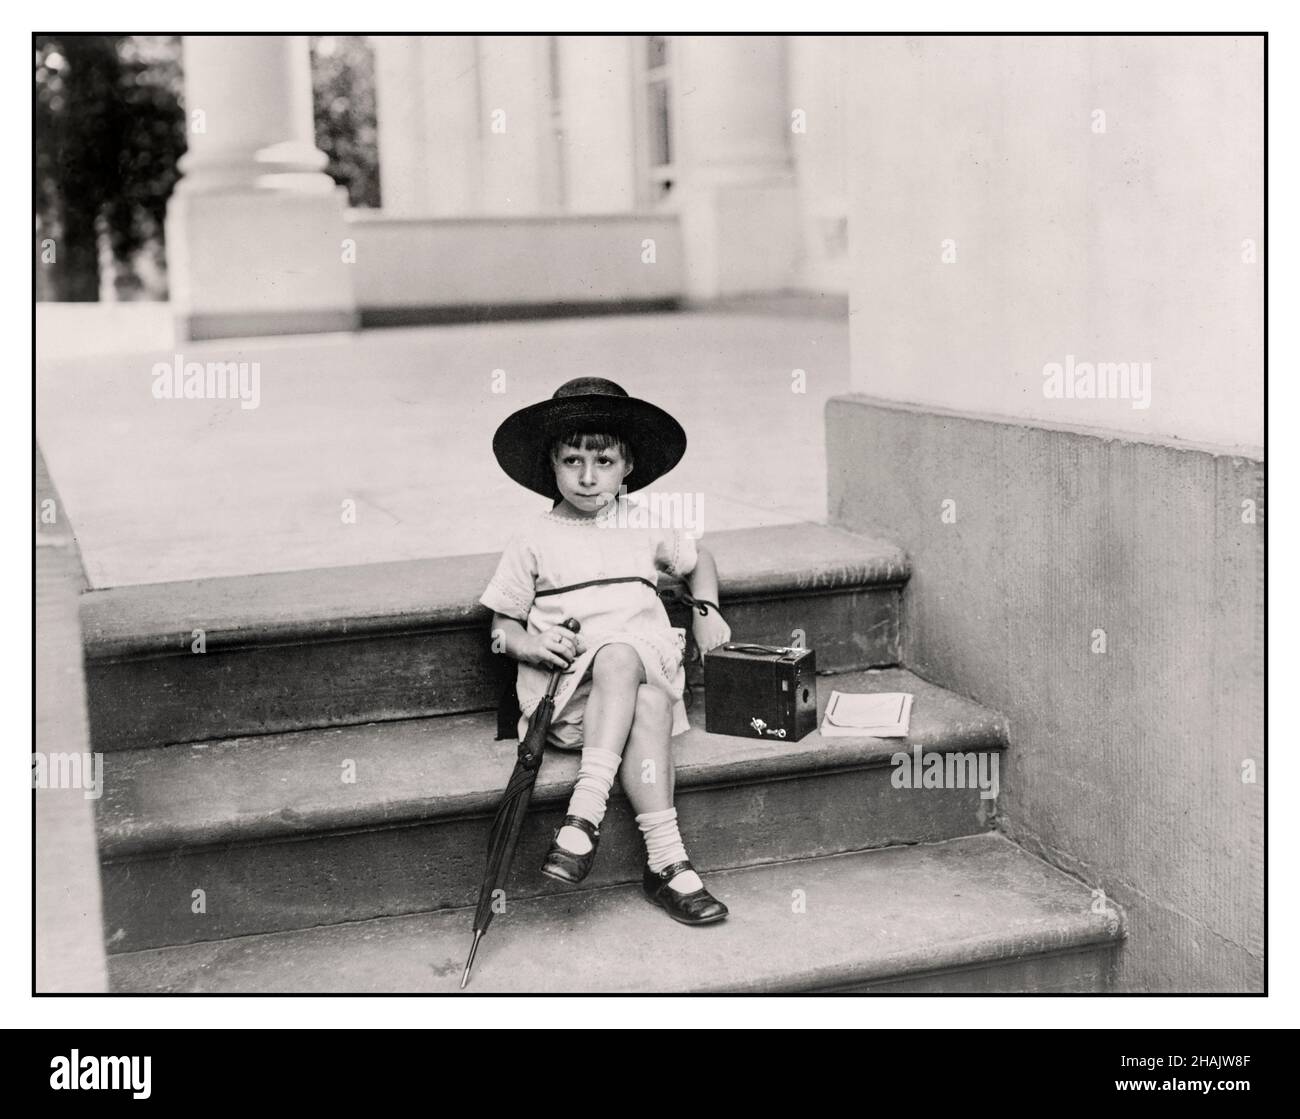 Vintage 1920s « en attente de la présidente » confiante jeune fille avec un appareil photo Kodak Box la dernière technologie de photographie amateur la photographie montre une fille dans un chapeau large bord assis sur les marches de la Maison Blanche avec un parapluie et un appareil photo Kodak Box à ses côtés.Créé / publié le 1922 juin 29.- appareils-photo--1920-1930 - enfants--1920-1930 - Photographie--1920-1930 petite Mlle Tarkington, fille de Mme W. Tarkington Jr. Photographiée sur les marches de la Maison Blanche patiemment en attente de prendre une photo du président américain Harding Banque D'Images